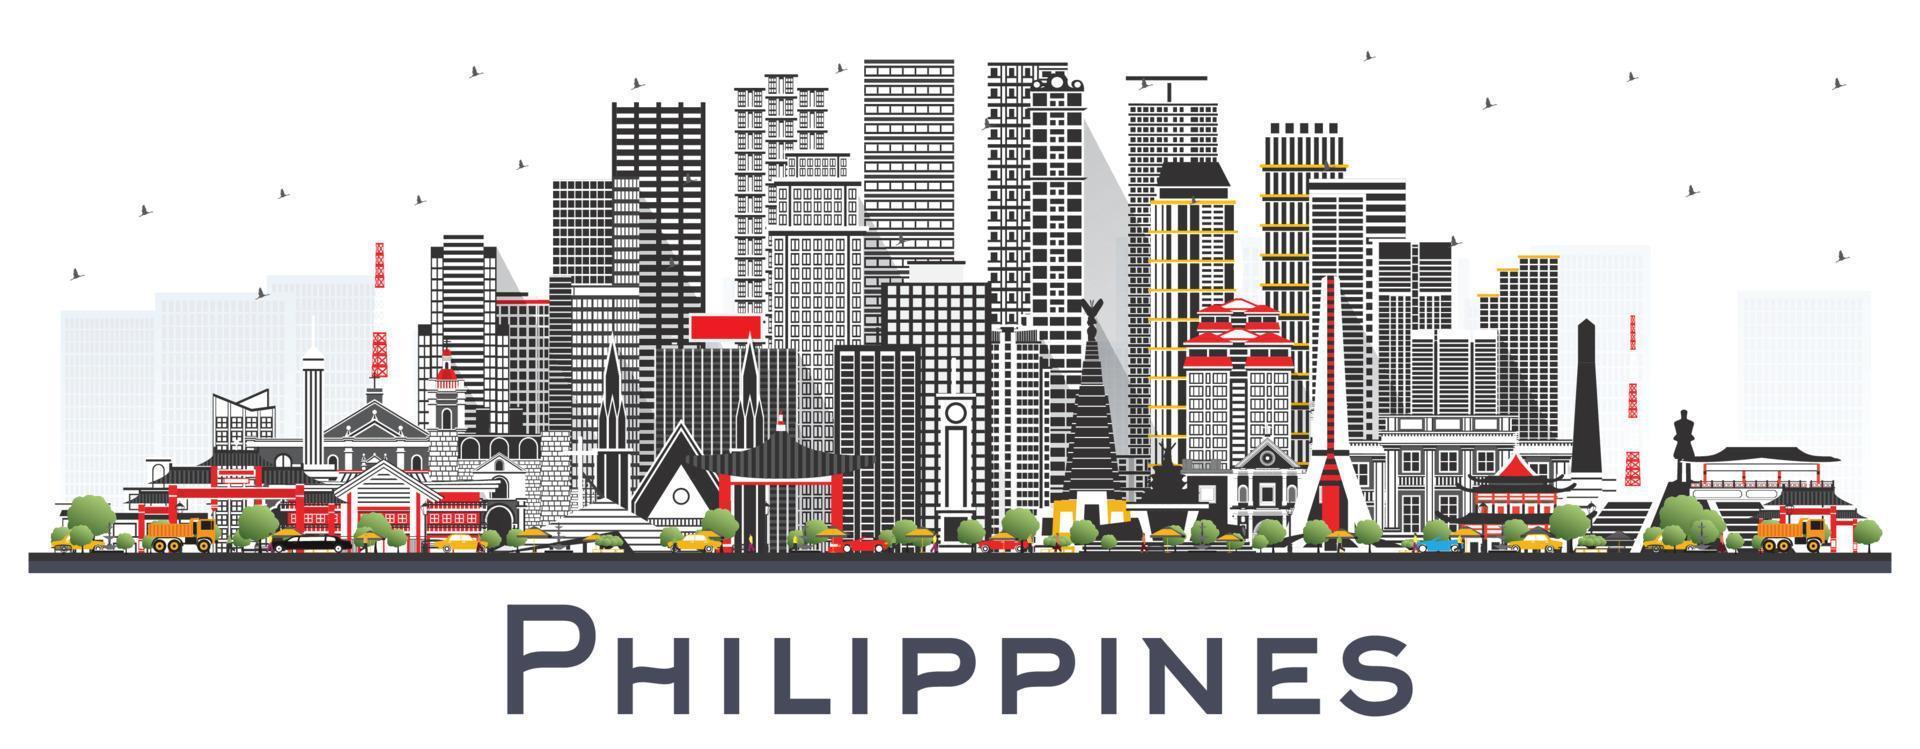 El horizonte de la ciudad de Filipinas con edificios grises aislados en blanco. vector